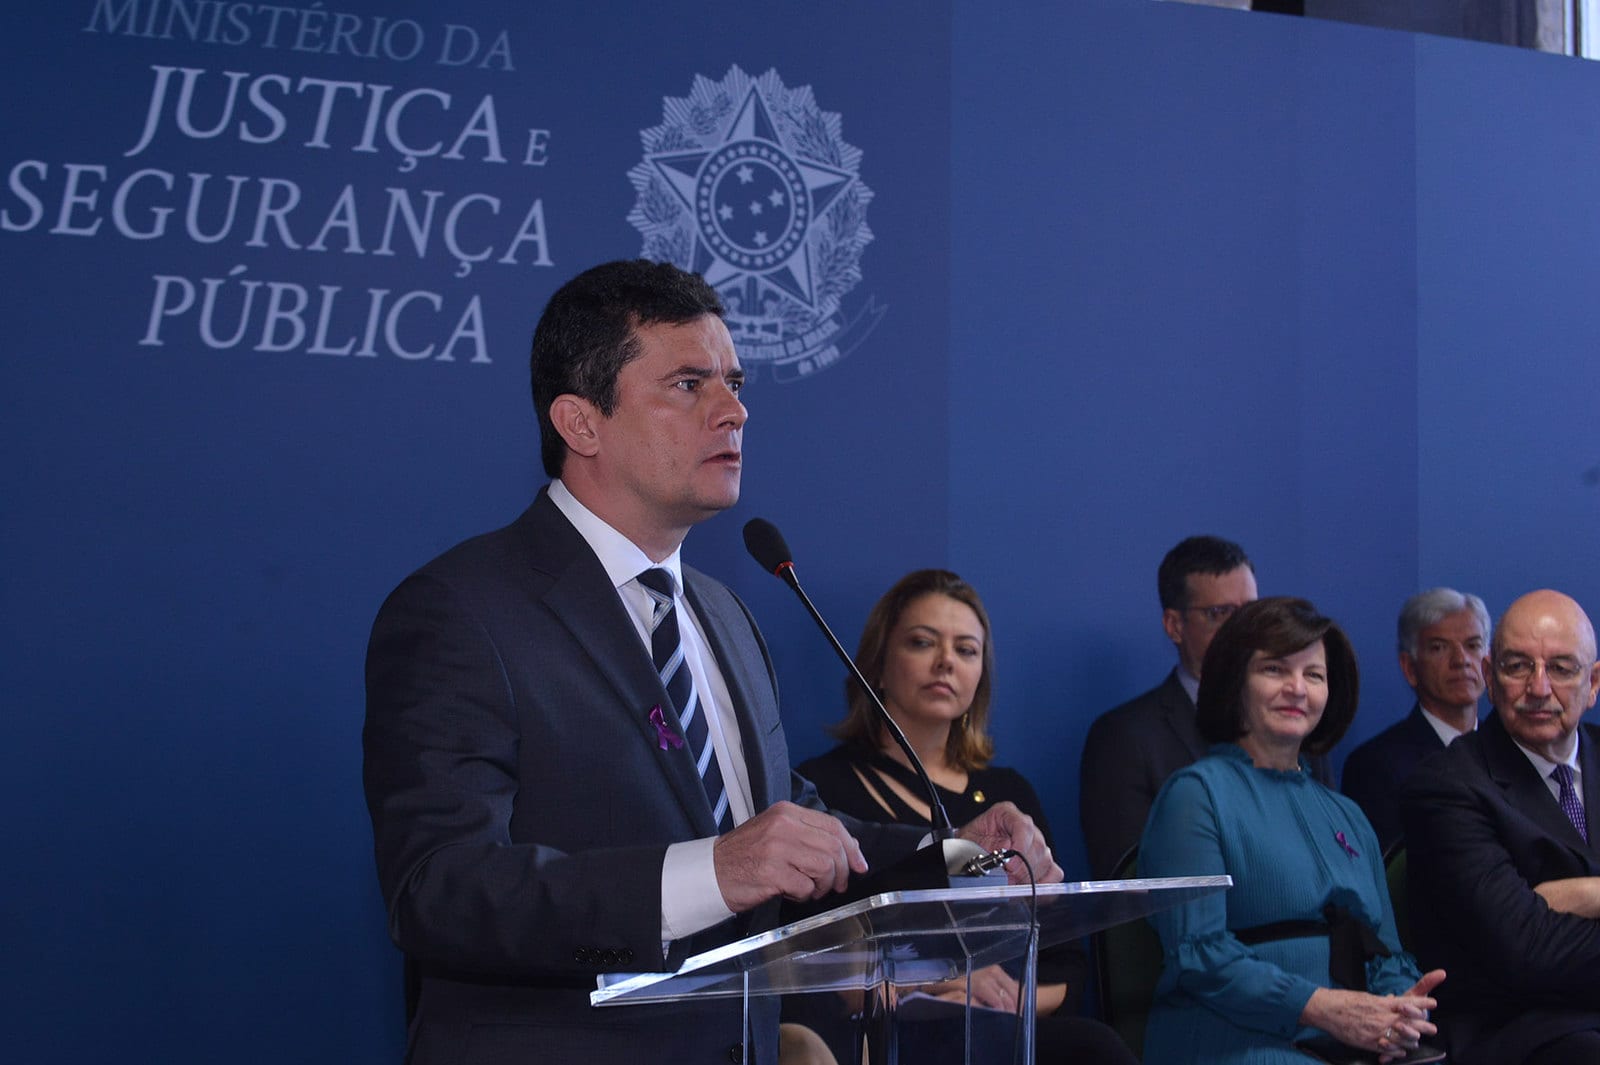 Sérgio Moro, Ministro da Justiça e Segurança Pública, durante evento do MJ - foto de Isaac Amorim/MJSP